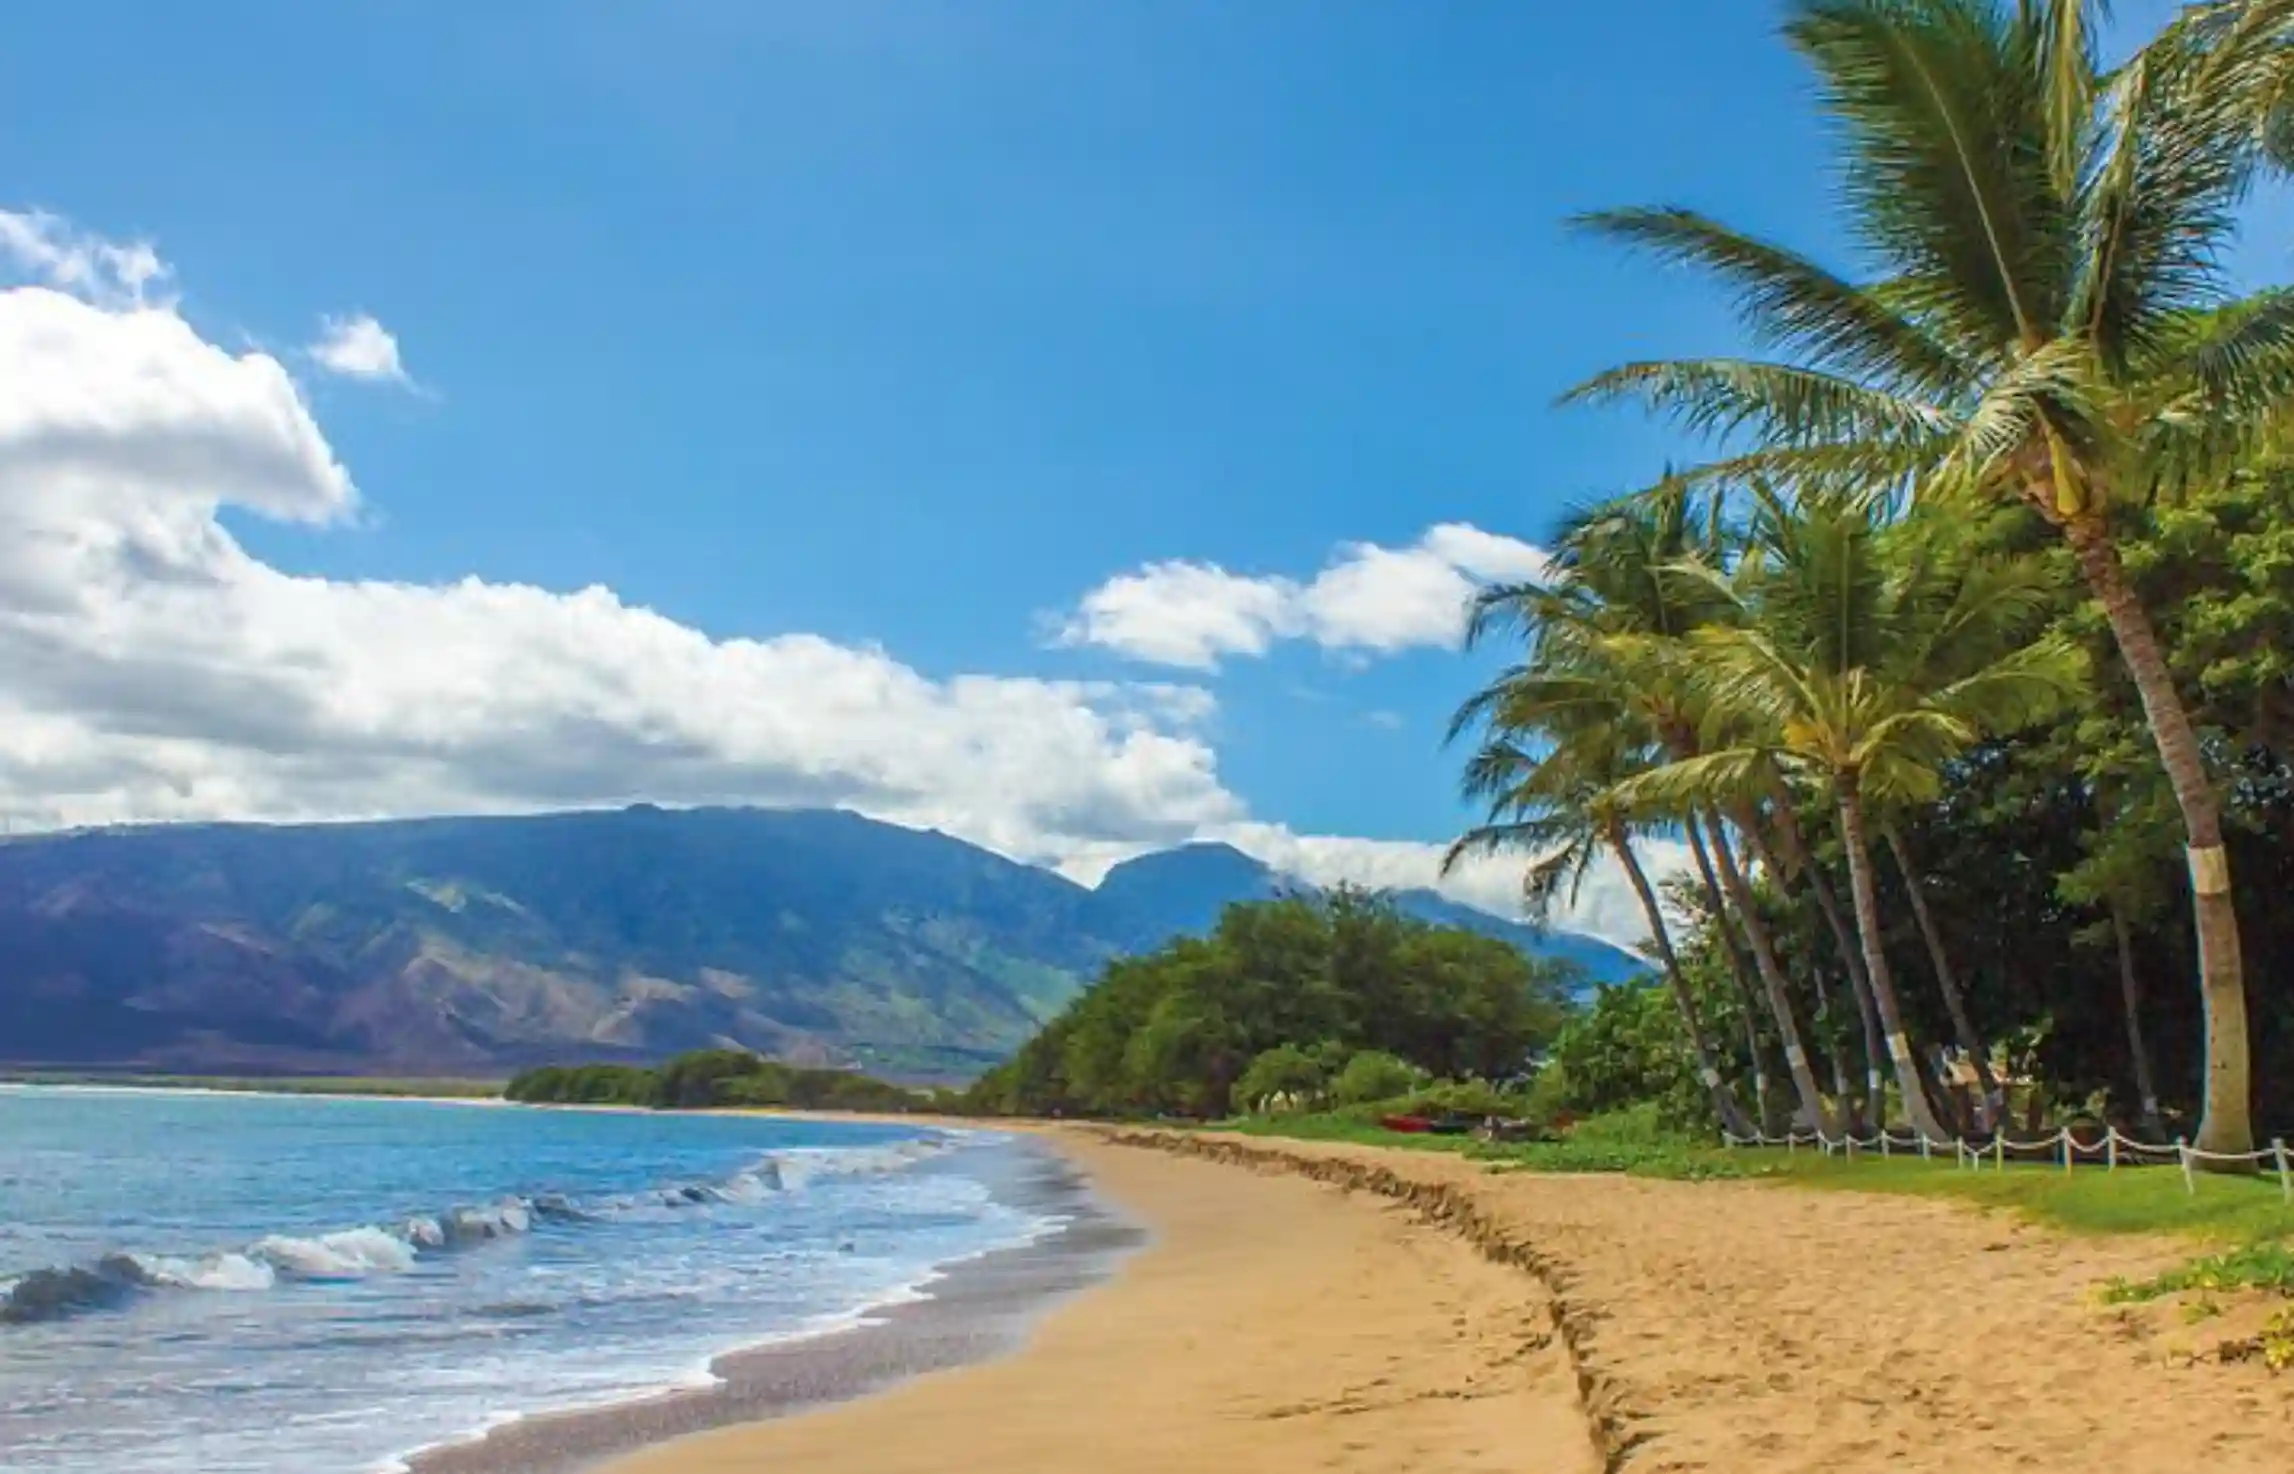 Road to Hana Maui Hawaii image